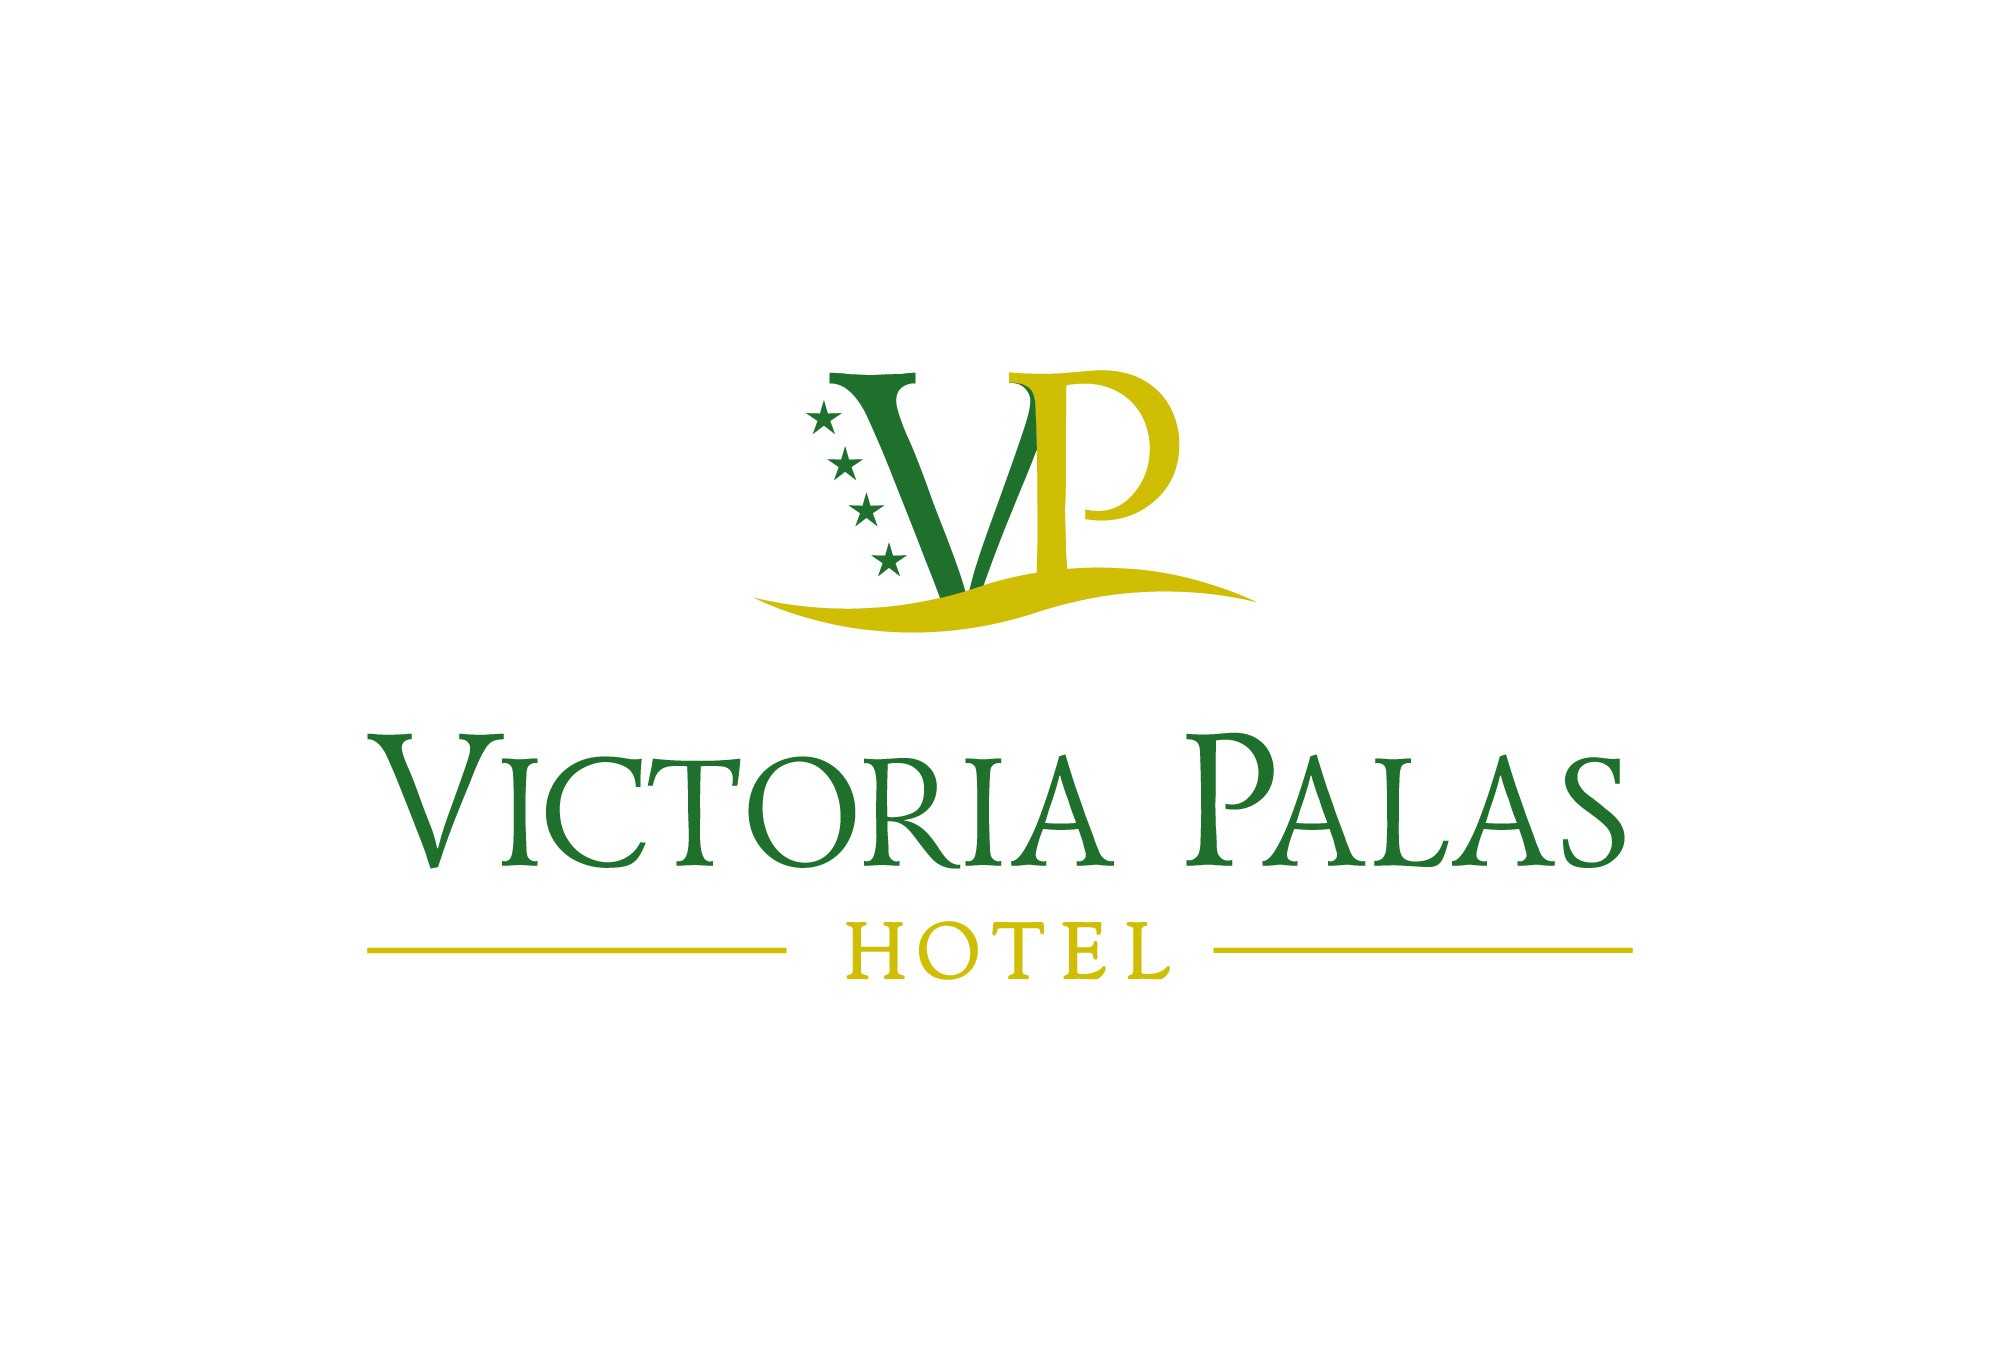 Victoria Palas Hotel